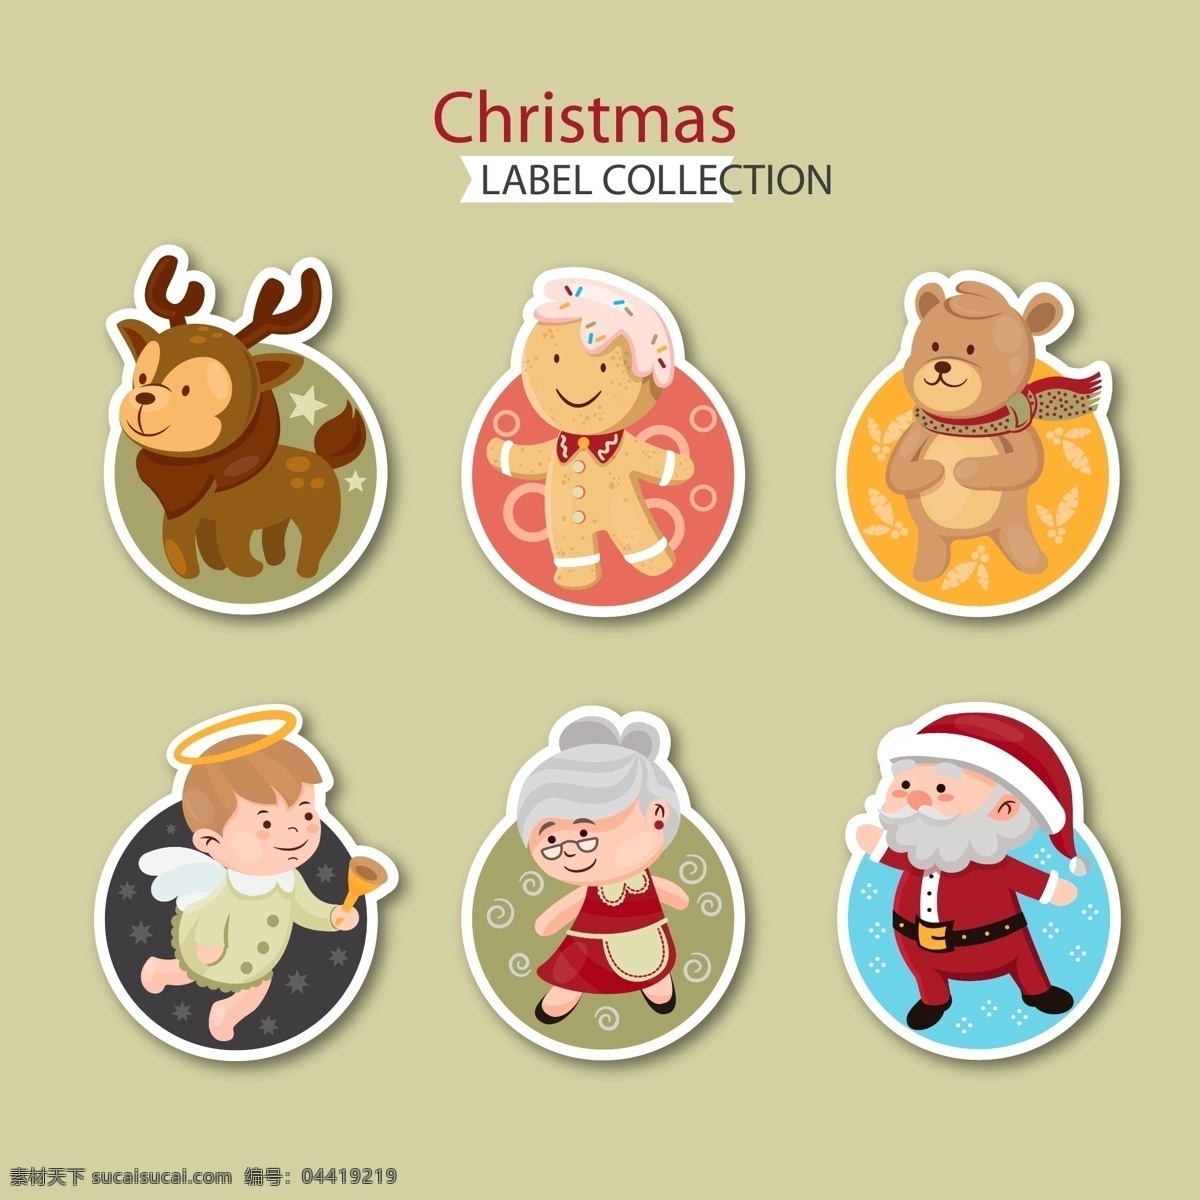 彩色 卡通 图案 圣诞 标签 圣诞节 矢量素材 驯鹿 圣诞老人 熊 姜饼人 天使